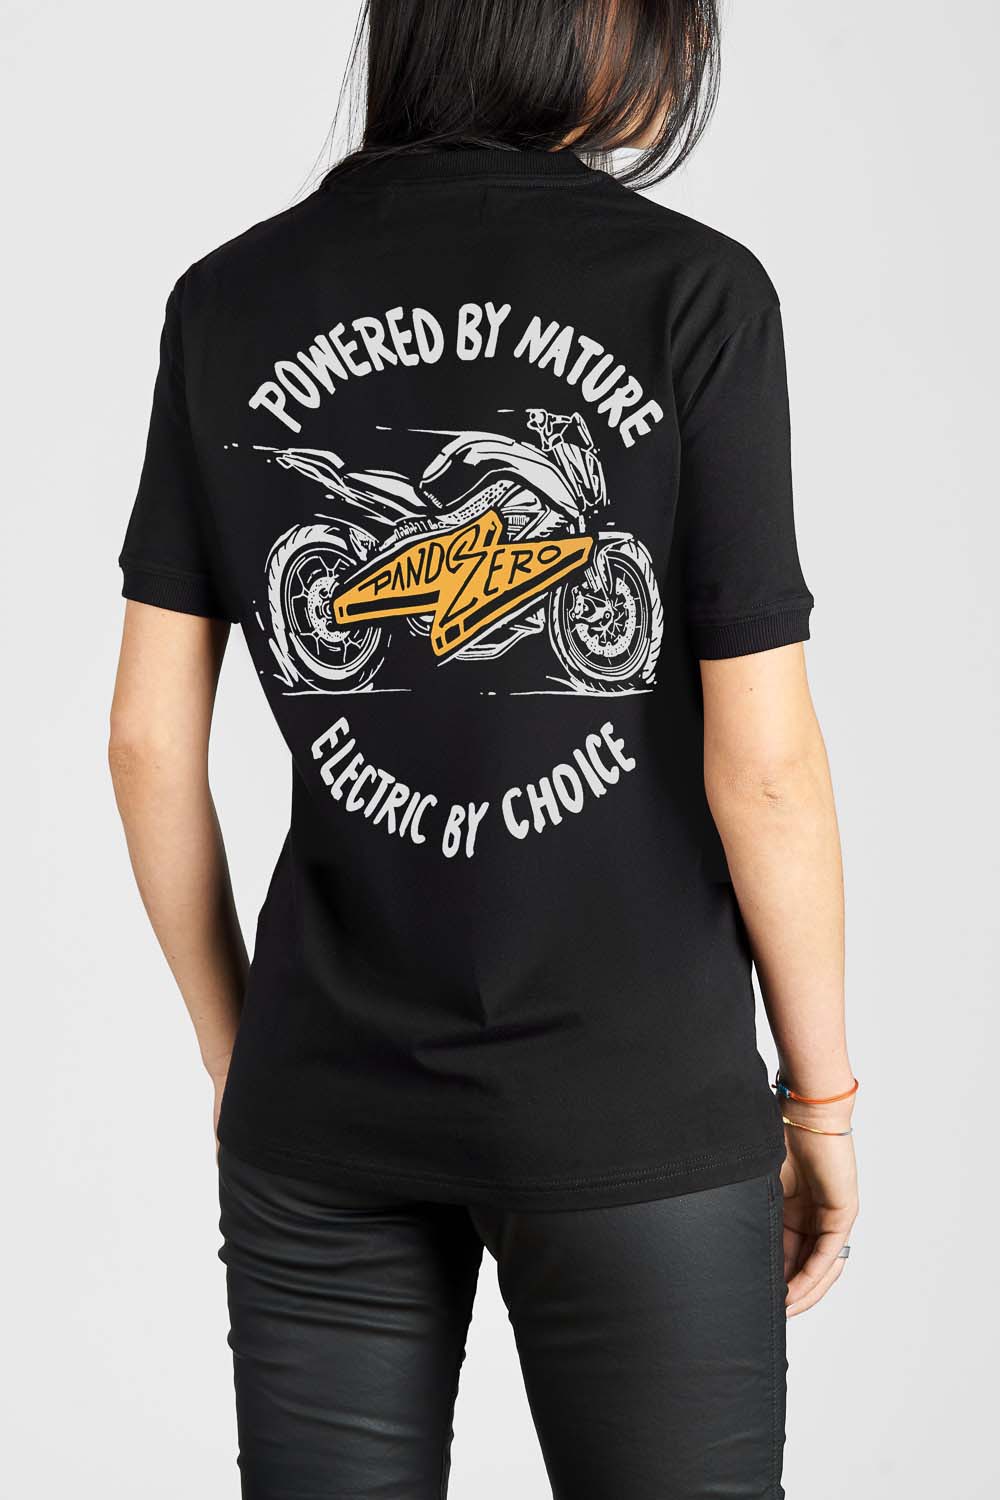 Pando Moto MIKE ZERO 1 T-Shirt